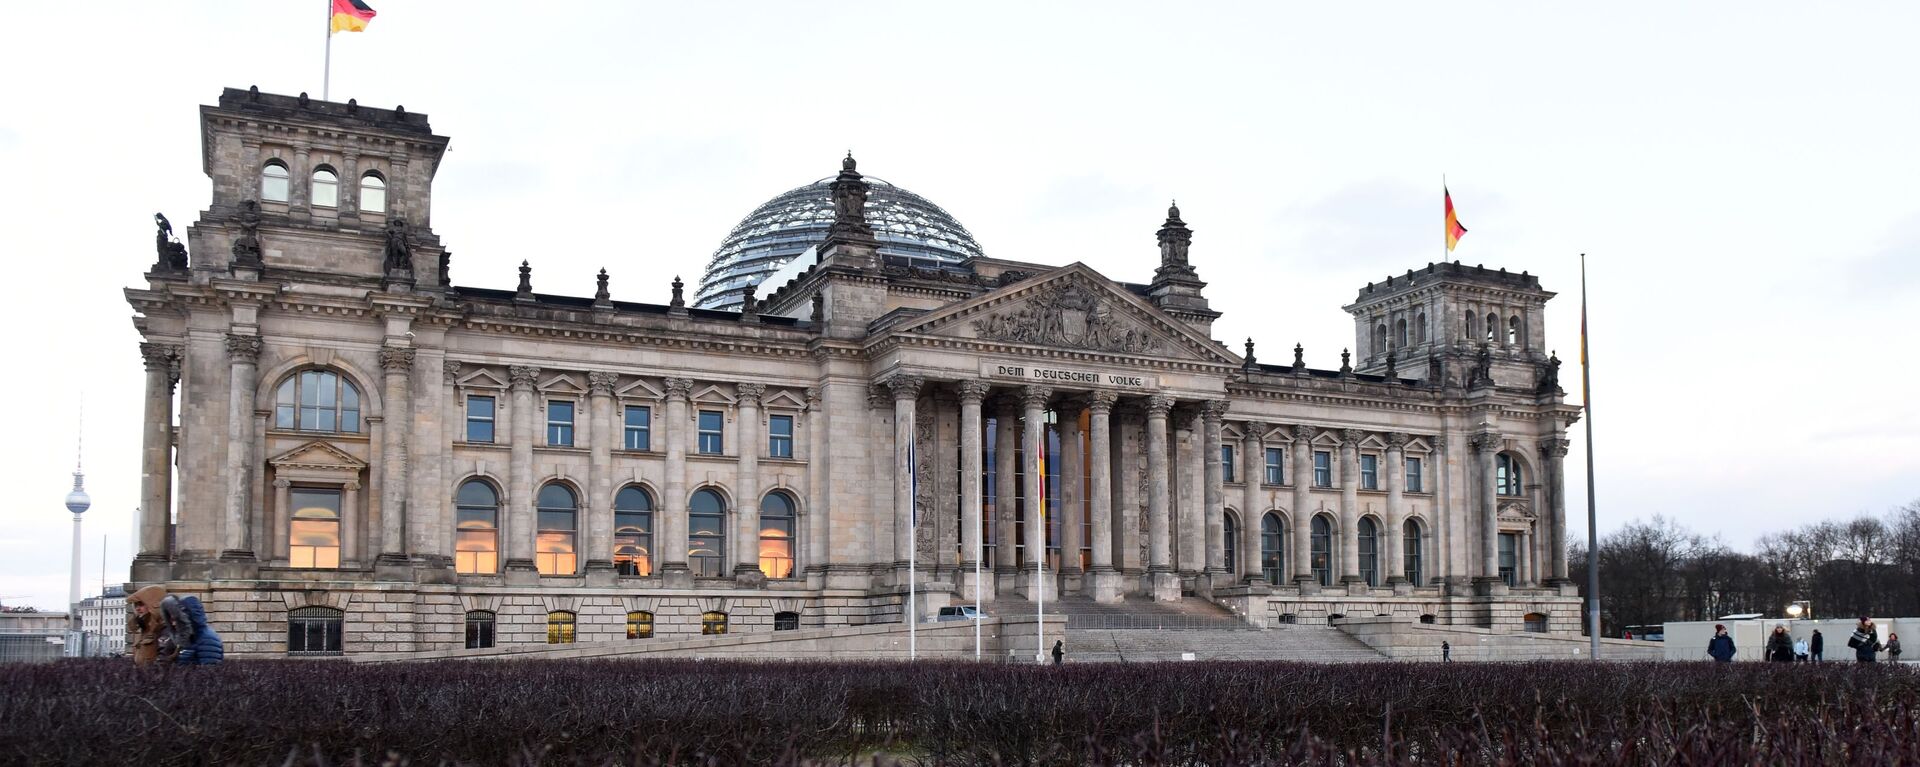 Tòa nhà Bundestag (Quốc hội) ở Berlin. - Sputnik Việt Nam, 1920, 08.05.2022